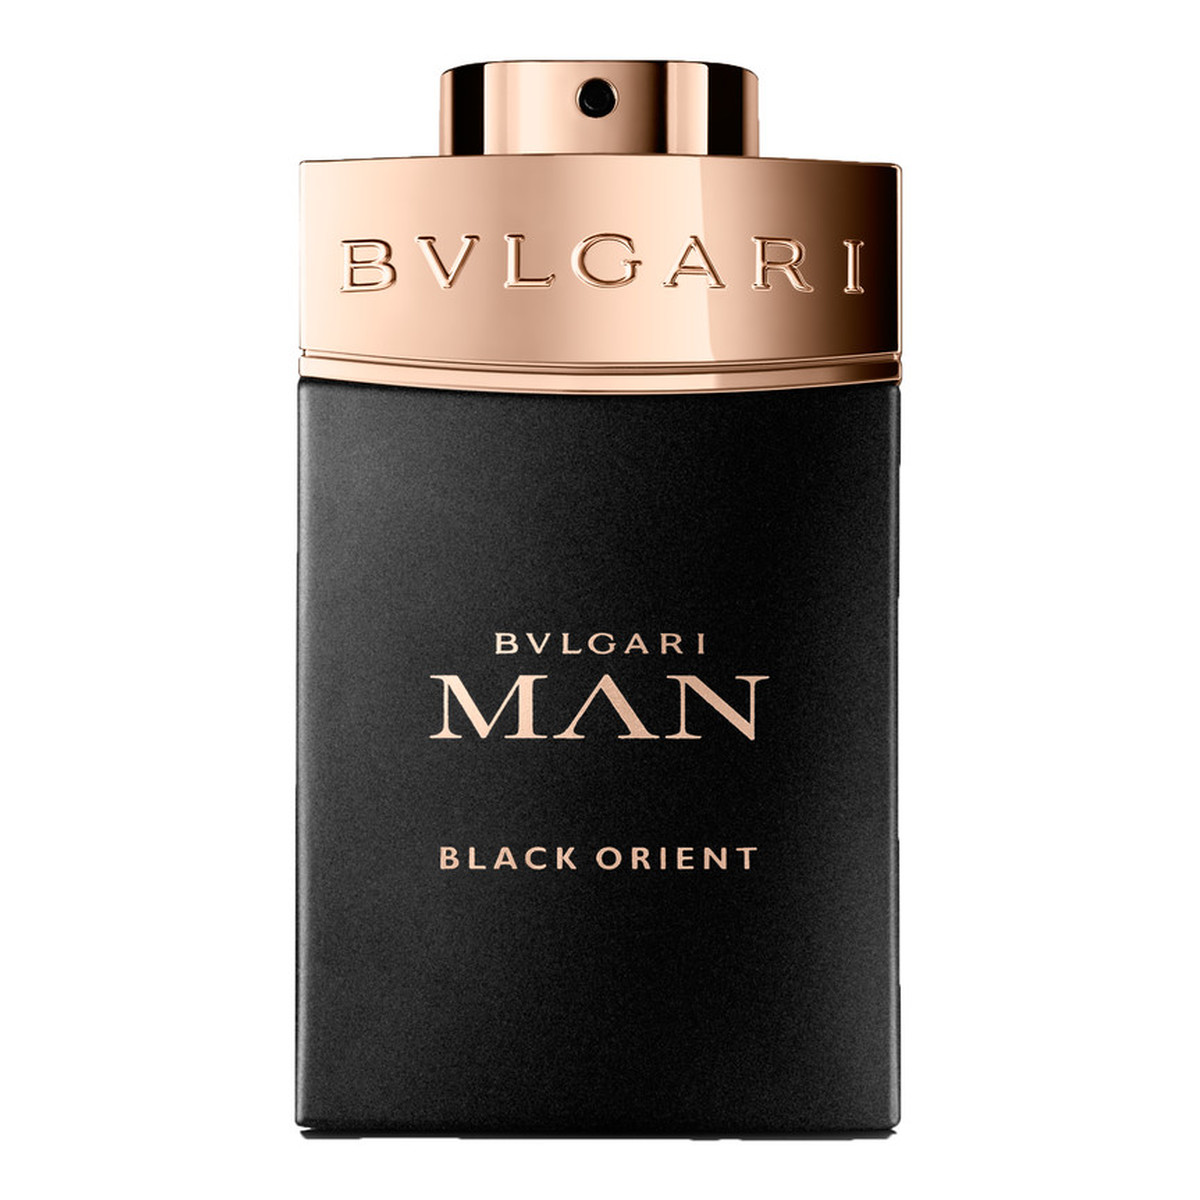 Bvlgari Man Black Orient woda perfumowana 100ml